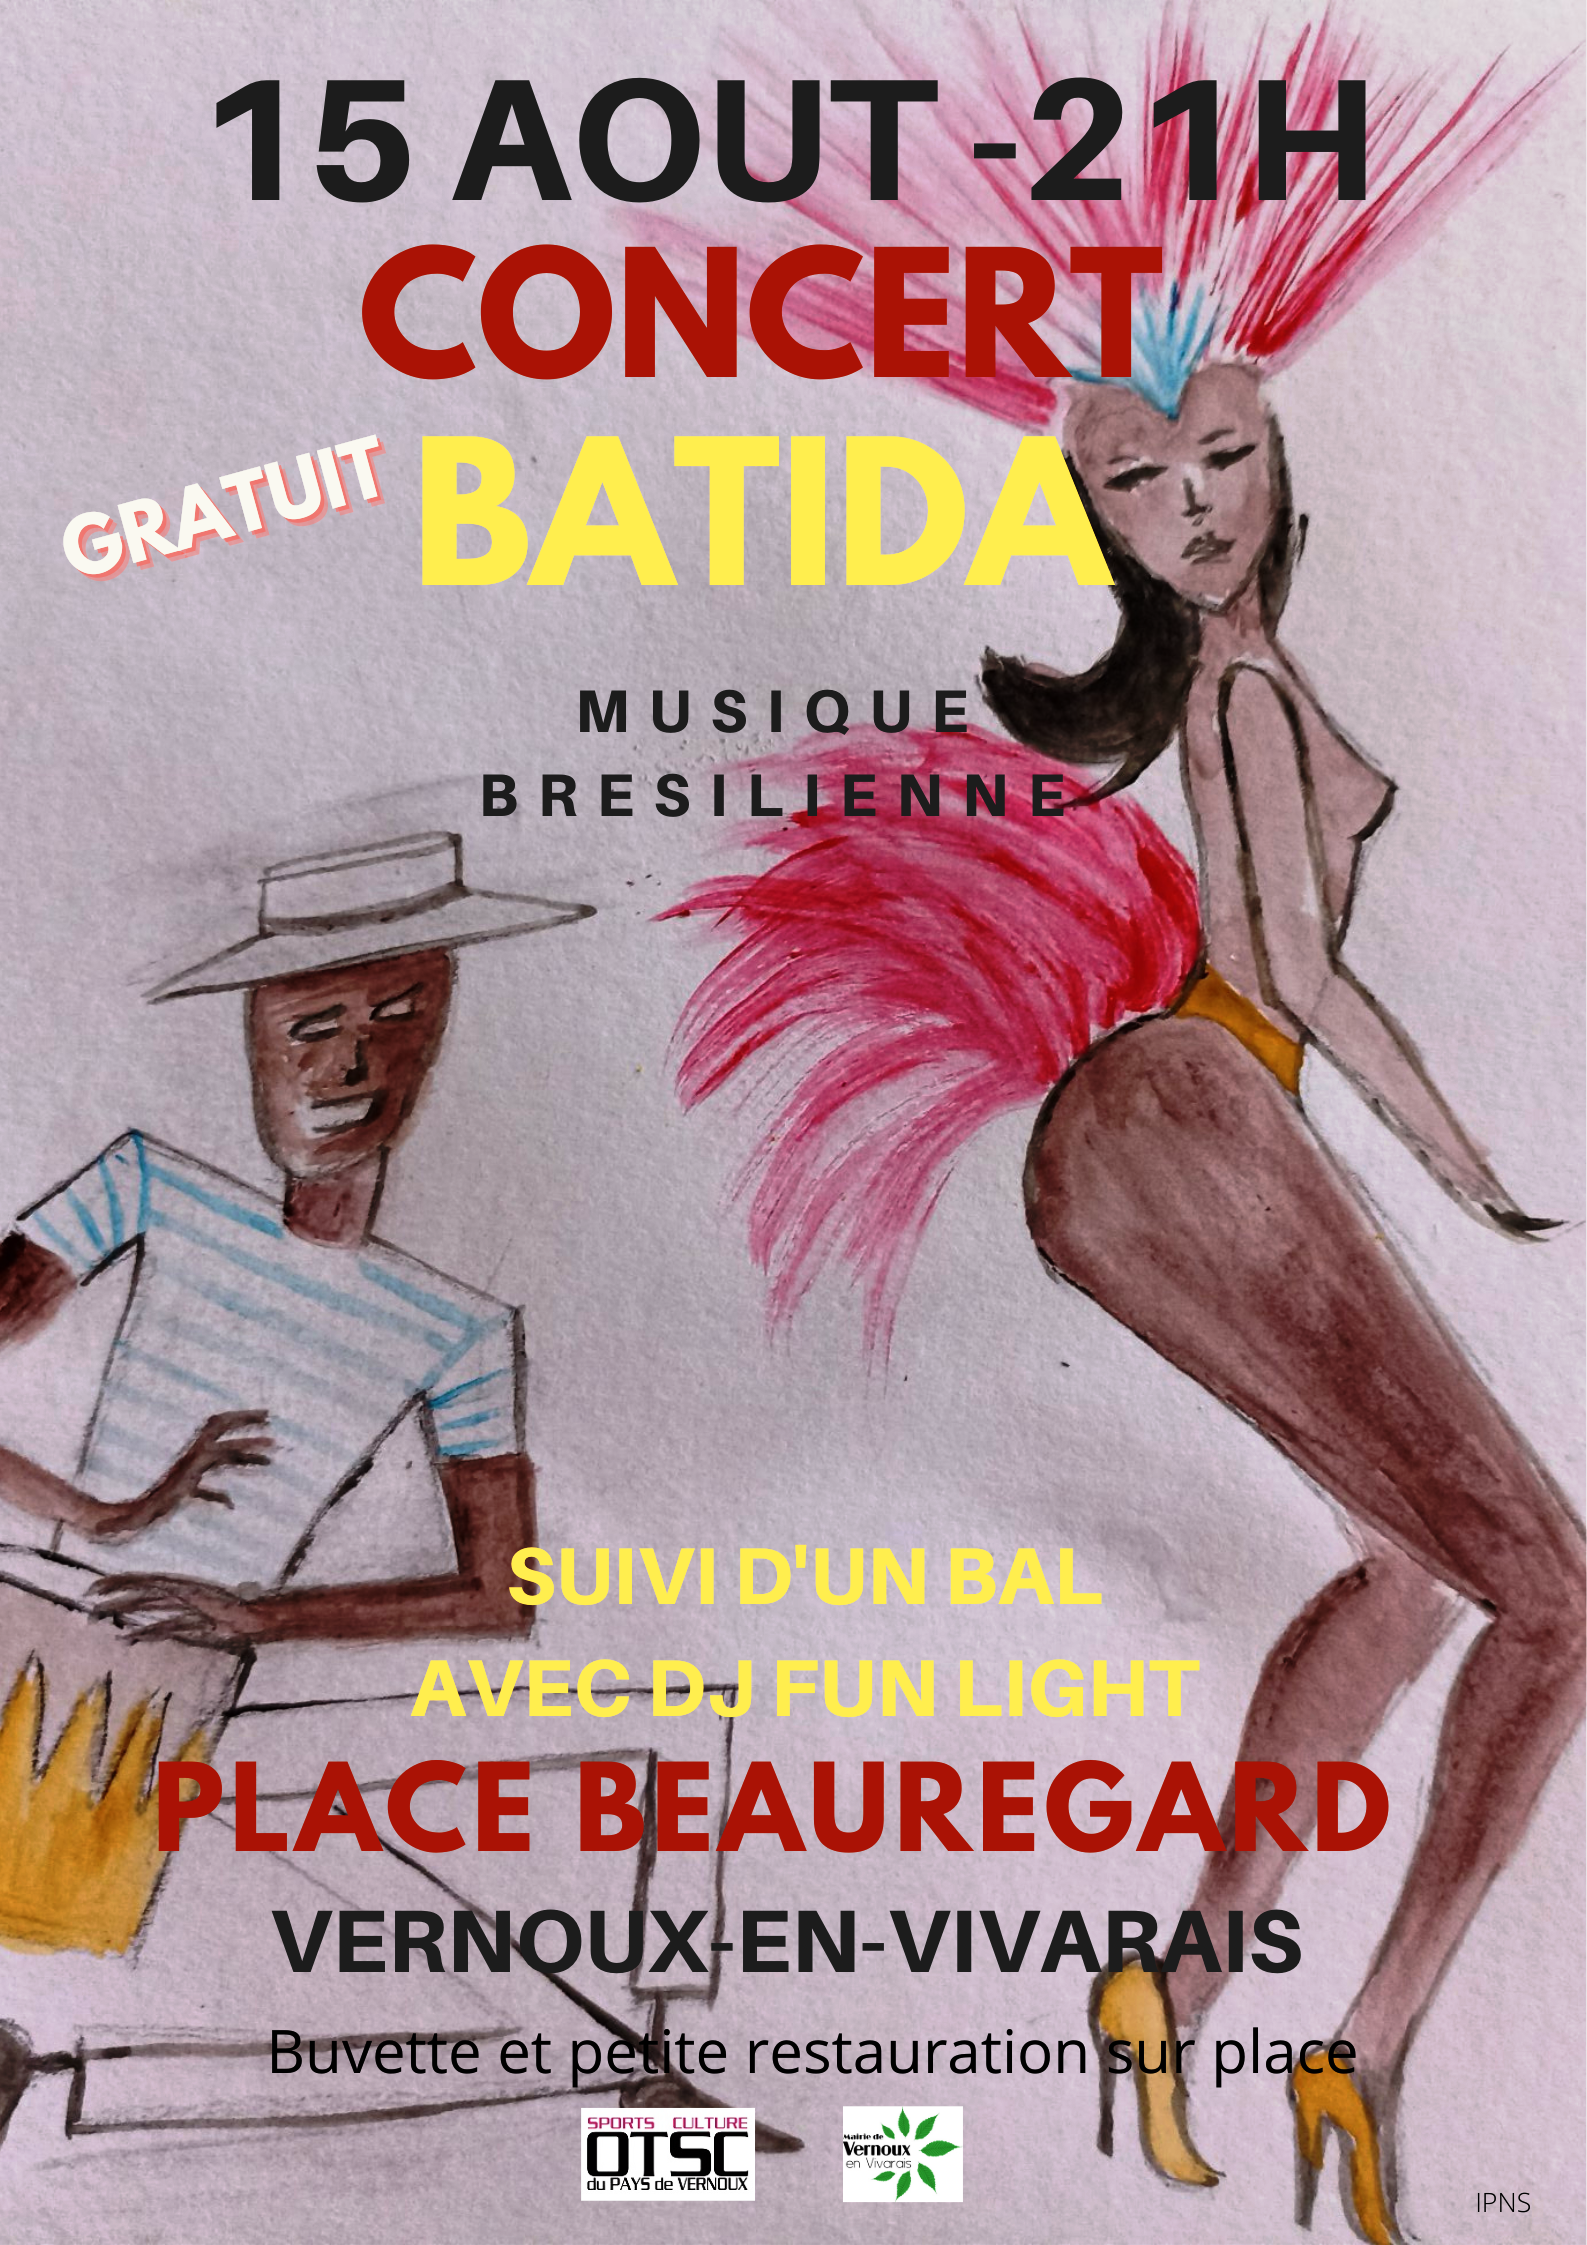 Alle leuke evenementen! : Soirée concert/bal : concert du groupe Batida (musique brésilienne) + bal avec sono DJ Fun Light